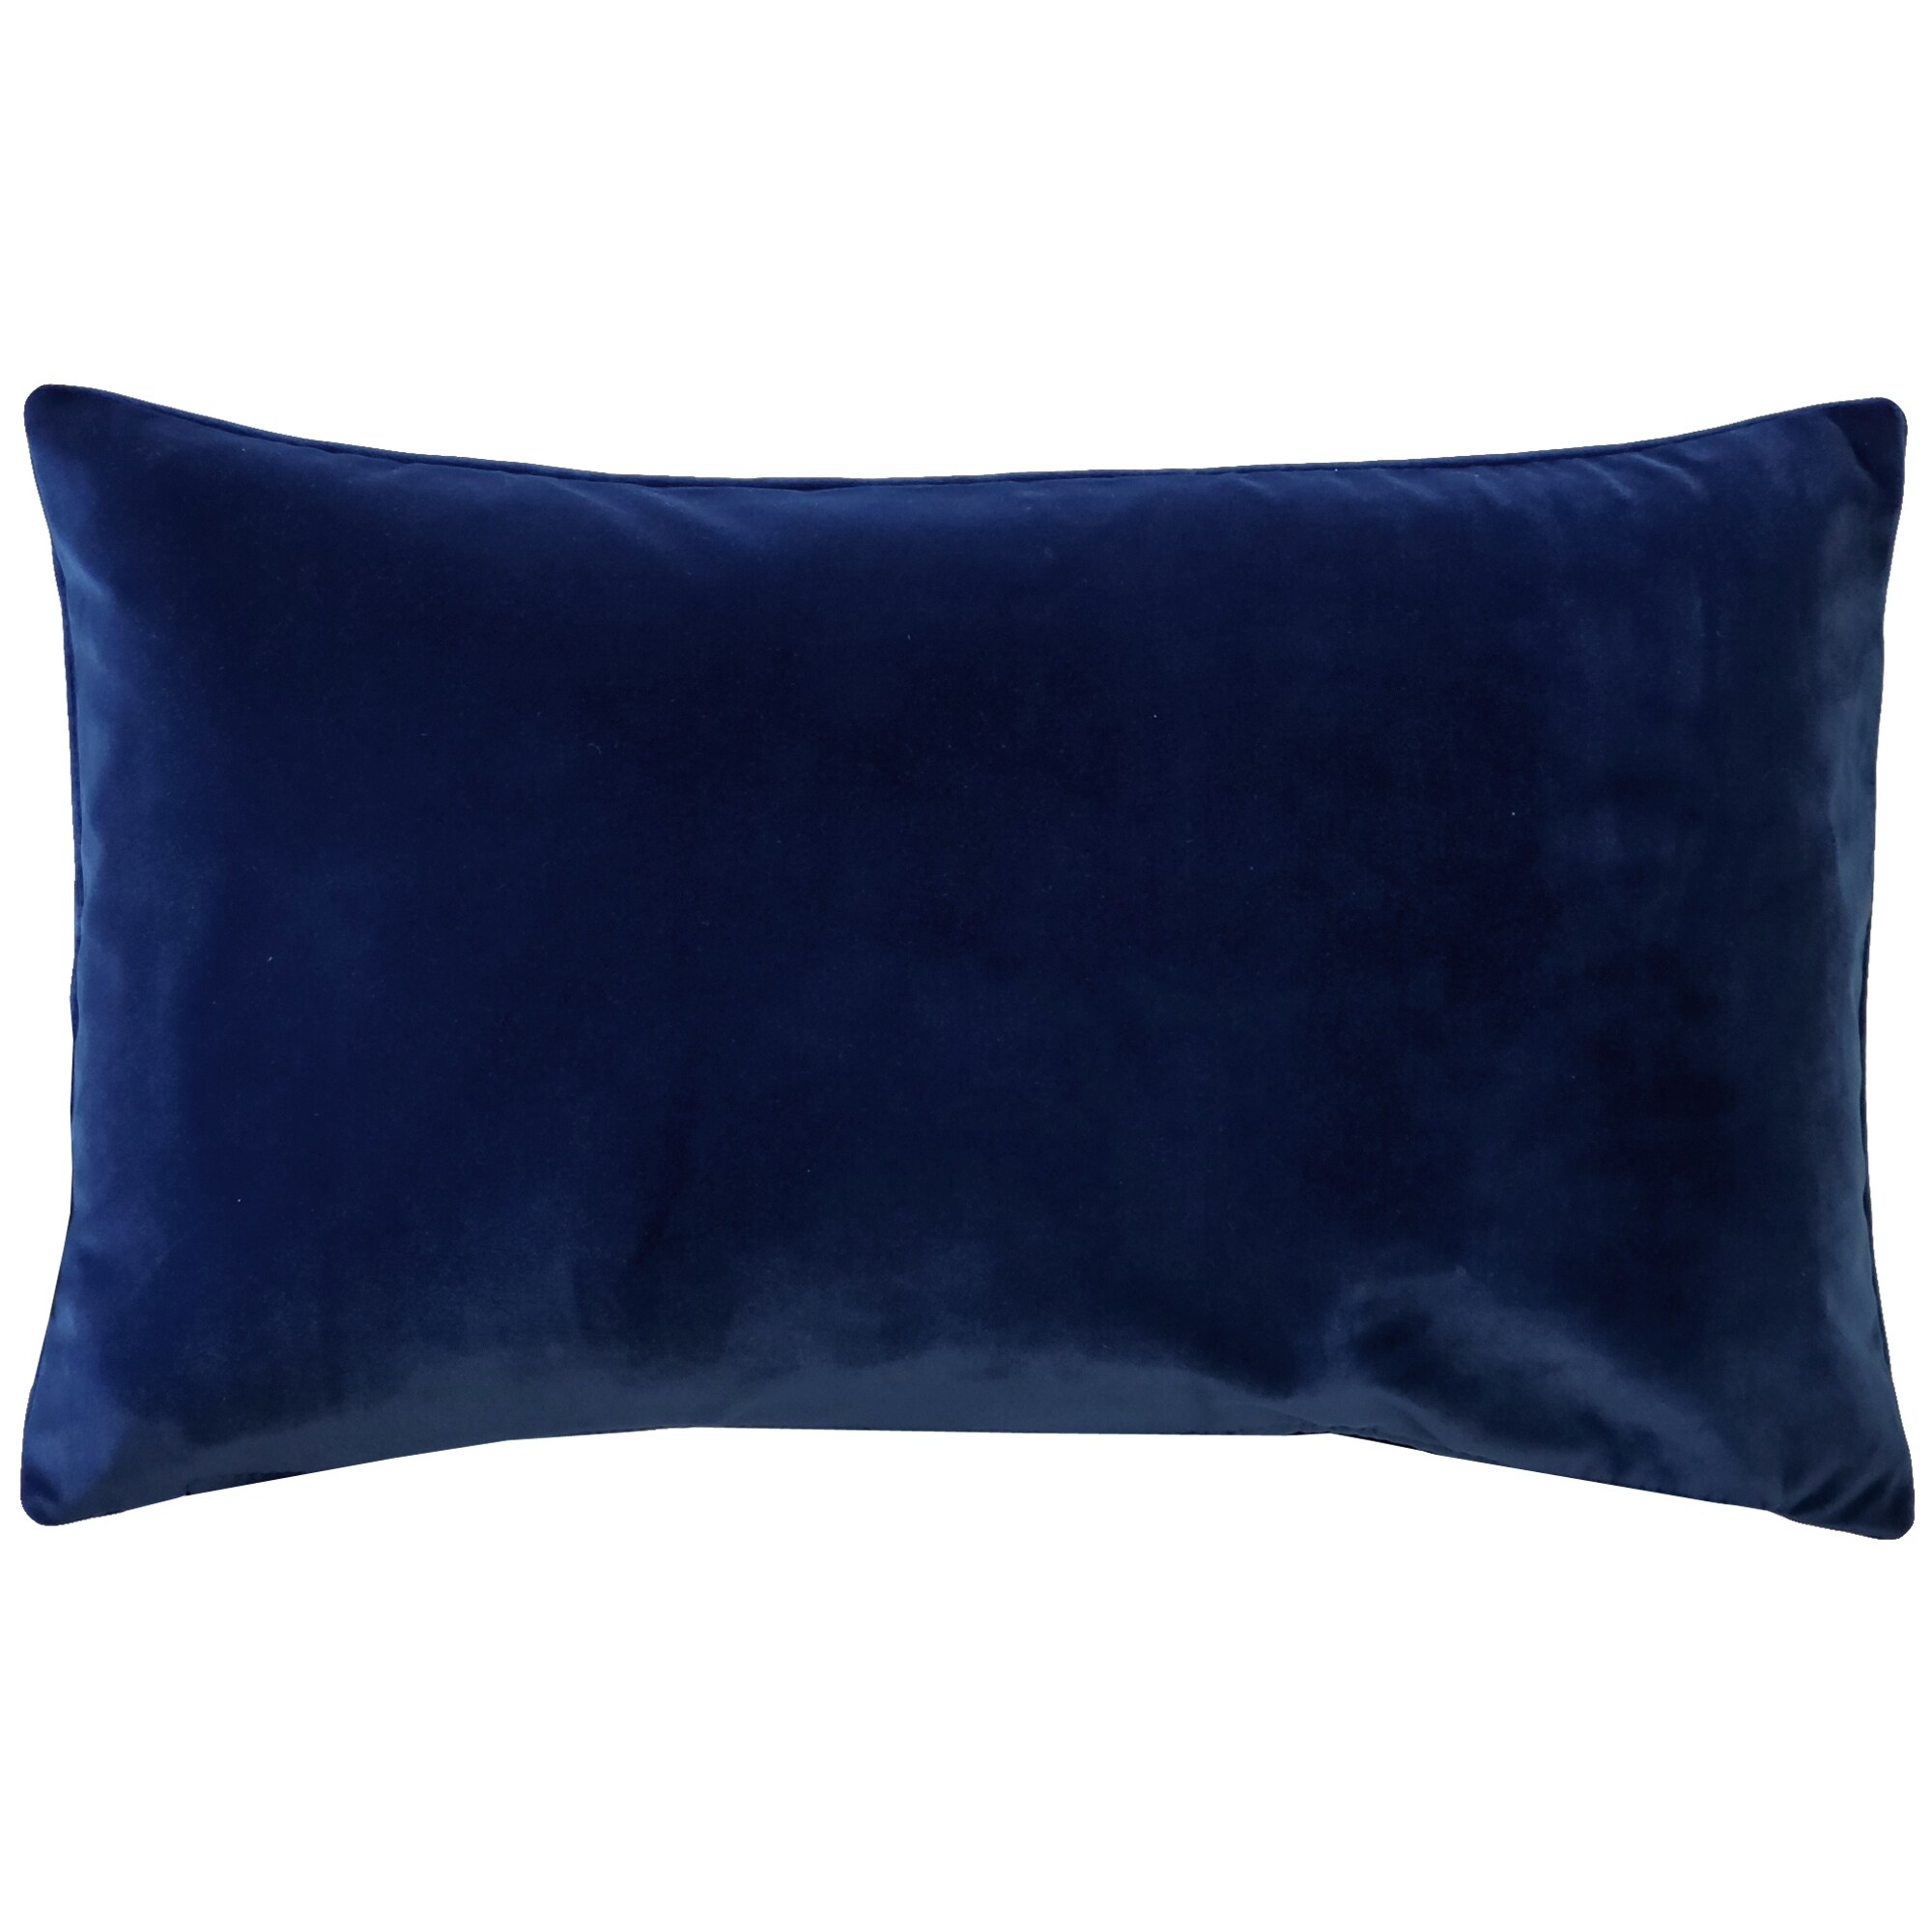 https://ak1.ostkcdn.com/images/products/is/images/direct/c457969fc796c0827ba325156b6ea70397d2f4a7/Pillow-Decor-Castello-Soft-Velvet-Throw-Pillows-%283-Sizes%2C-18-Colors%29.jpg